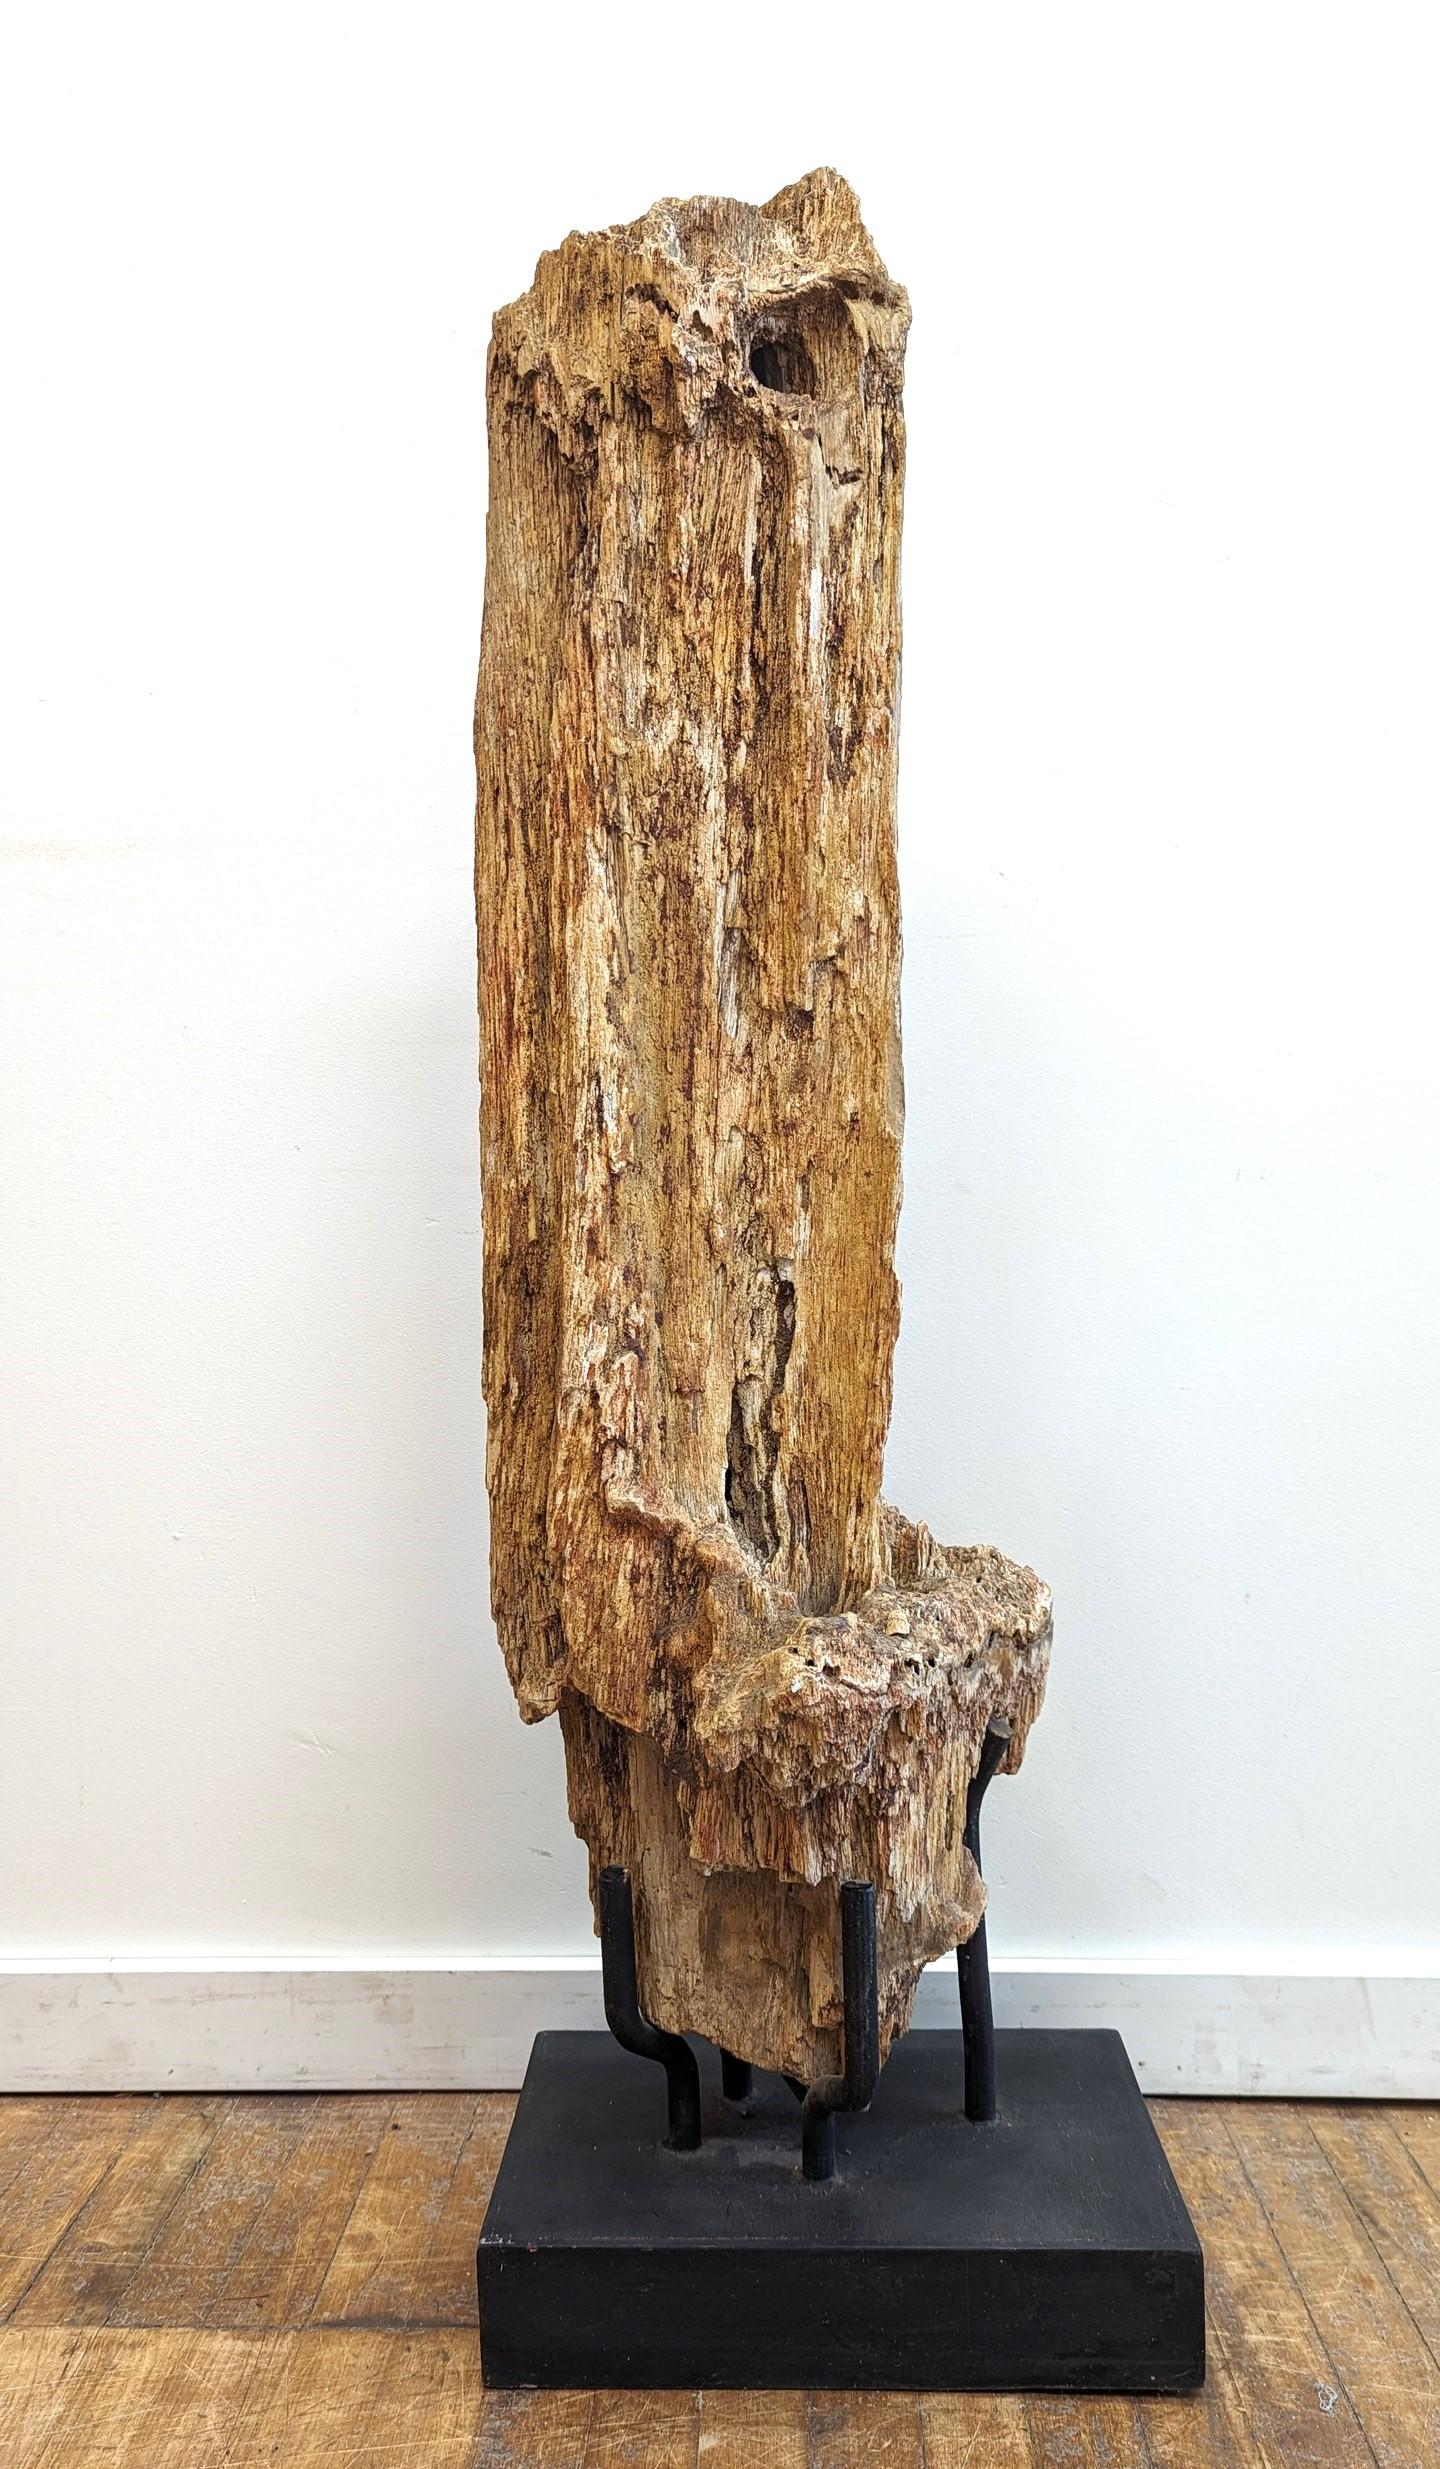 Un morceau naturel de bois pétrifié monté sur un socle.  Fossile brut naturel entièrement biologique, nettoyé pour l'exposition.  Le processus naturel de création du bois pétrifié prend des centaines, des milliers et des millions d'années.  Une